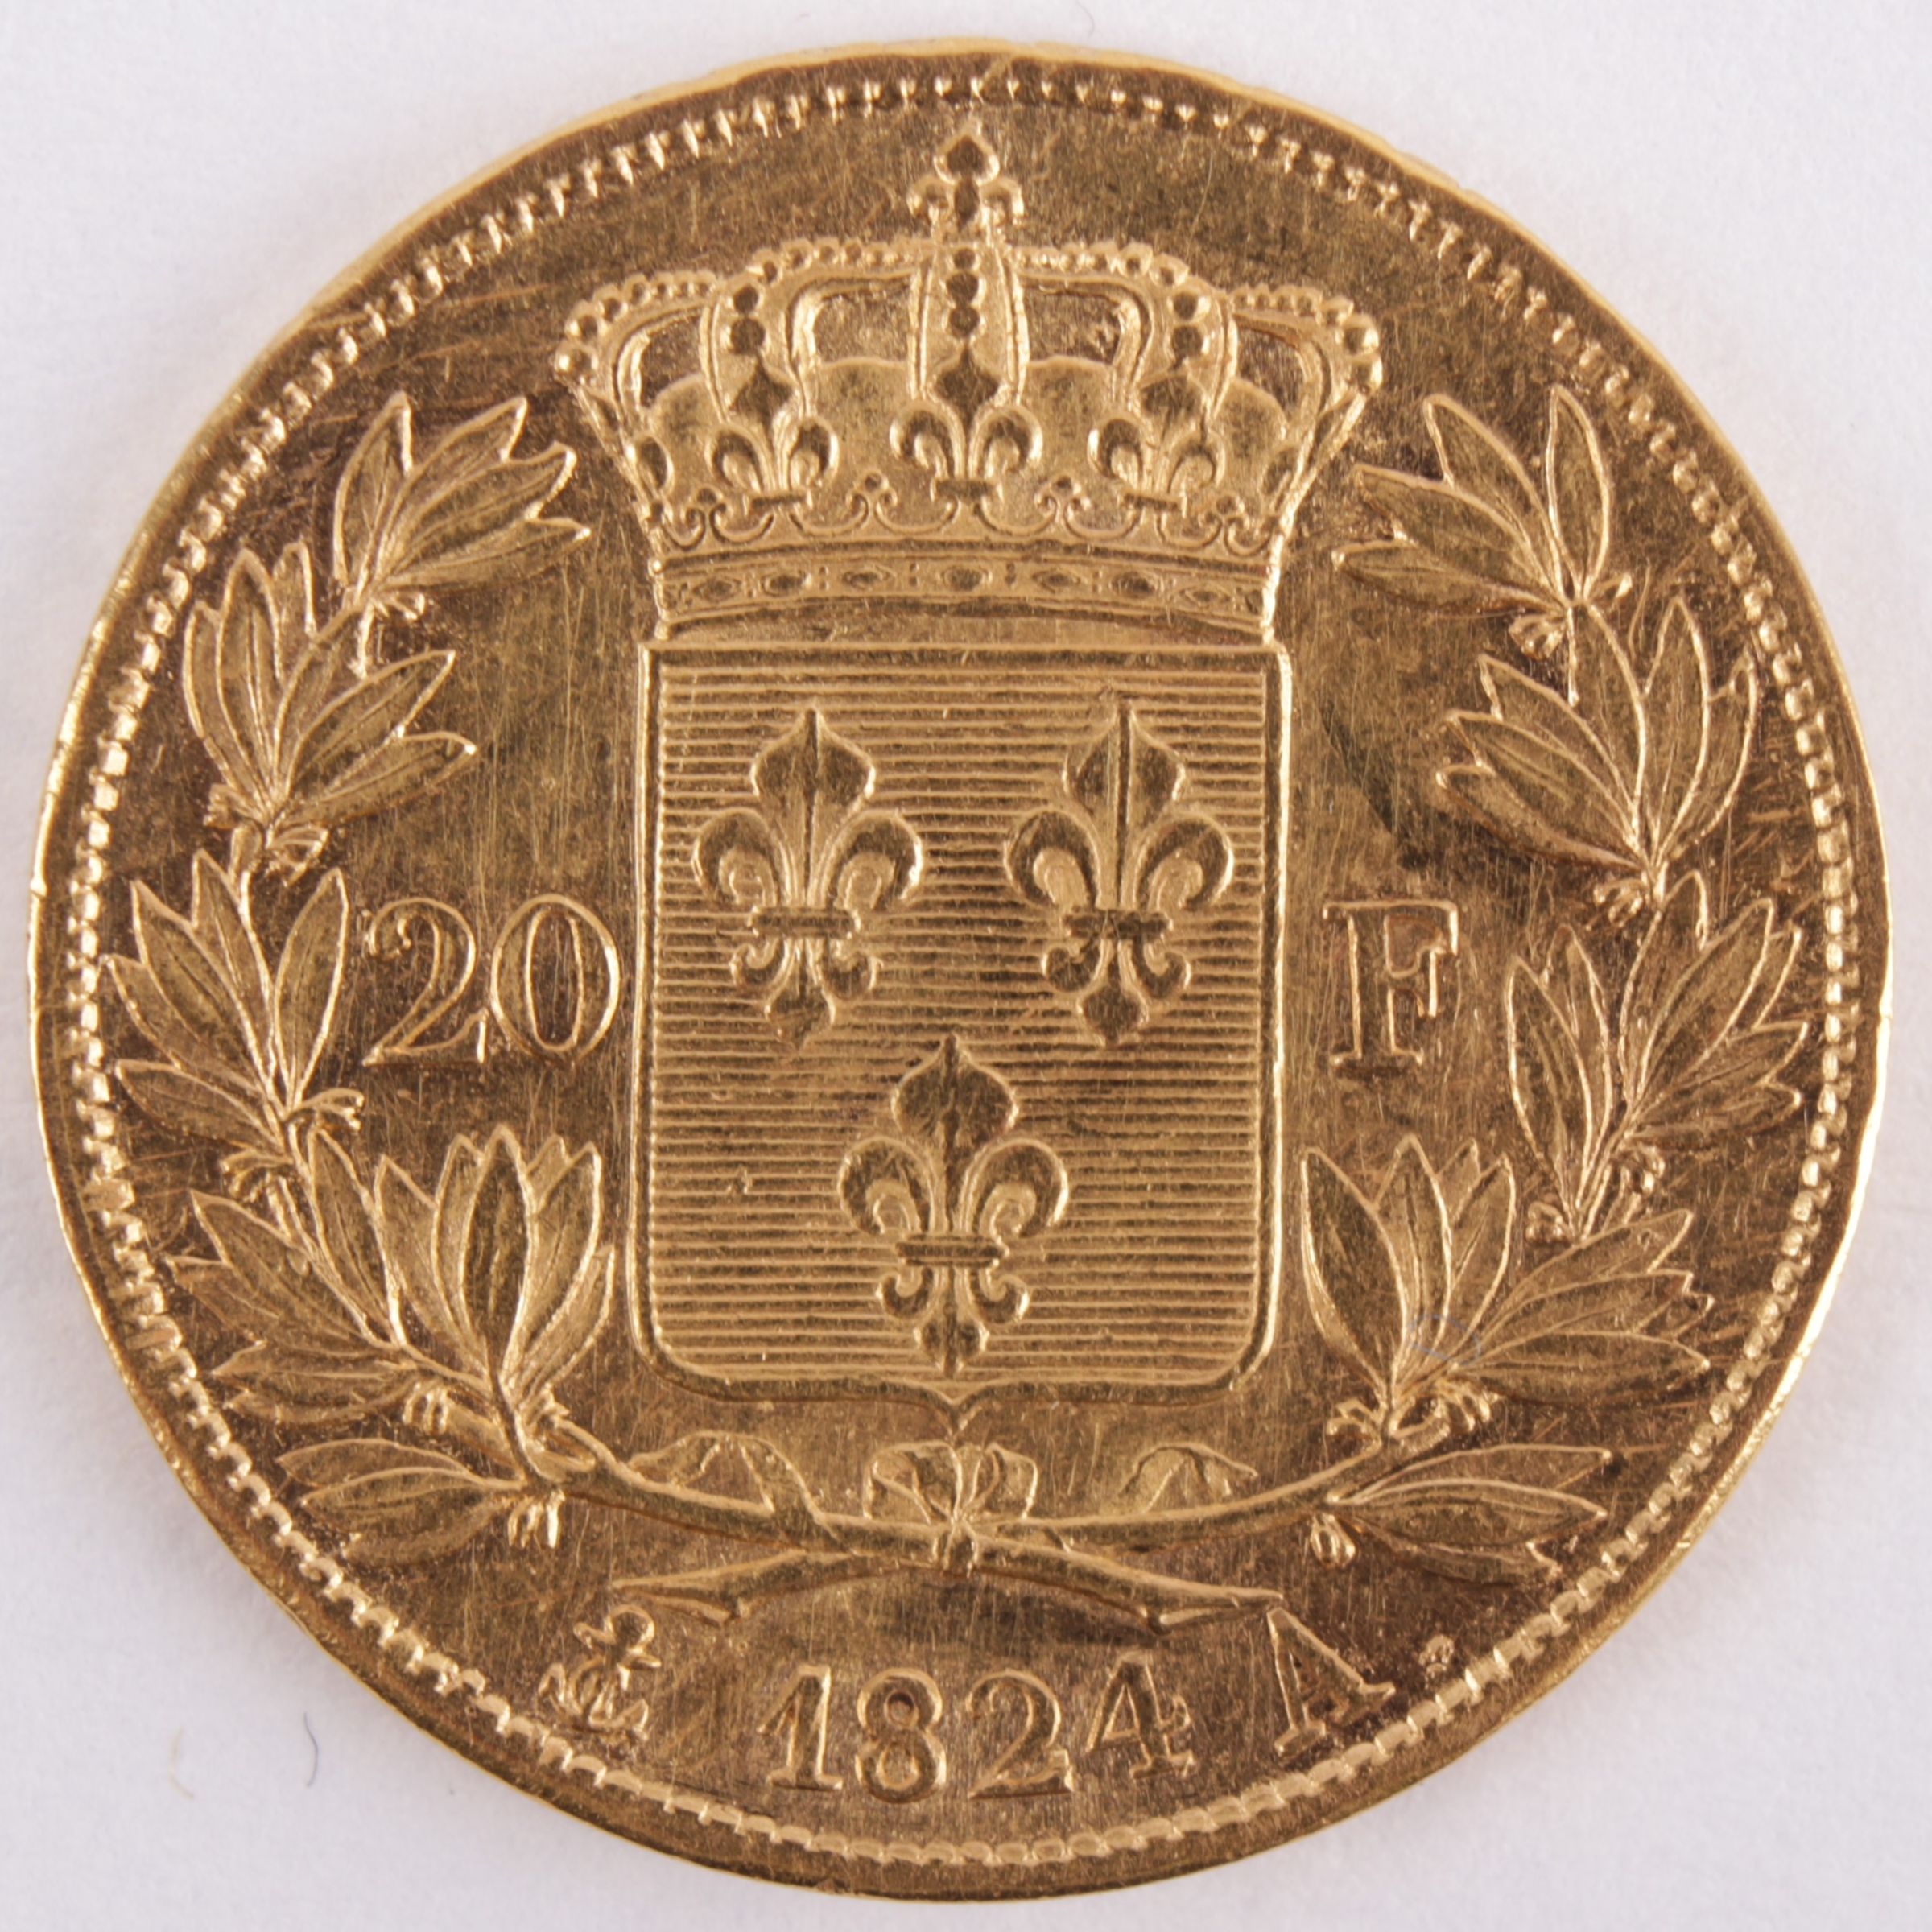 Louis 18 roi de France Золотая монета 1818. 20 Франков 1814 Франция золото. 40 Francs 1834. 40 Франков золото. French 20